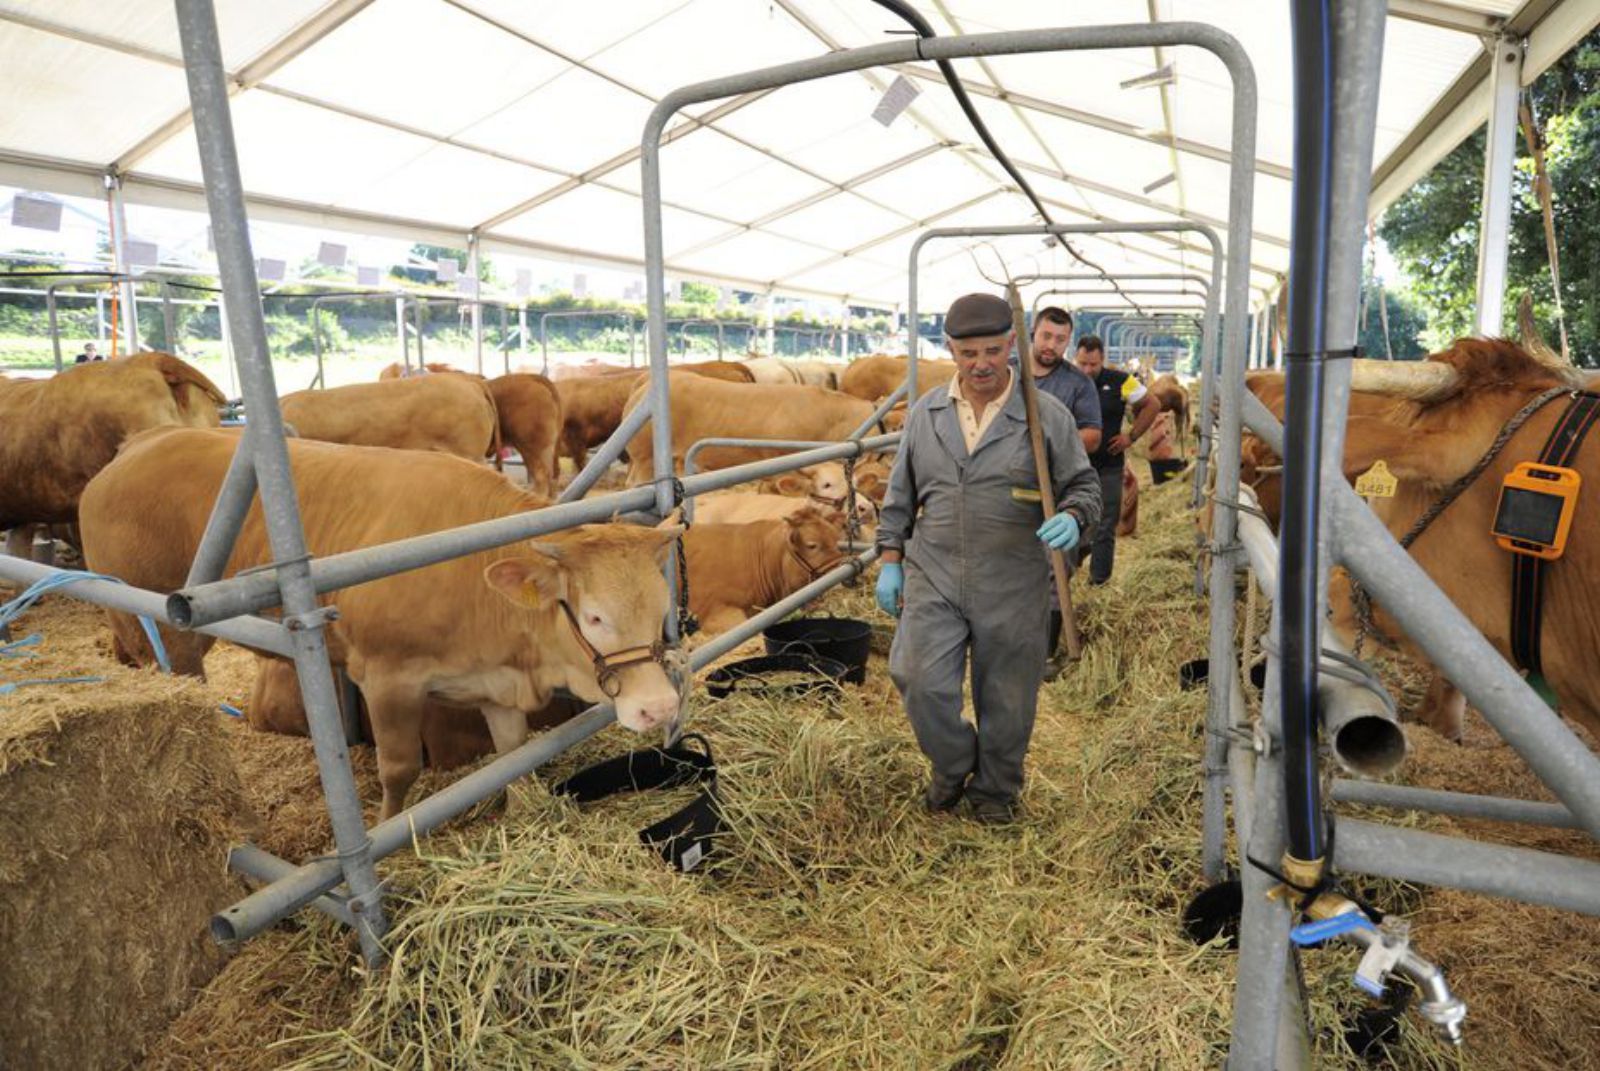 Exposición de vacas rubias, novedad en la feria.